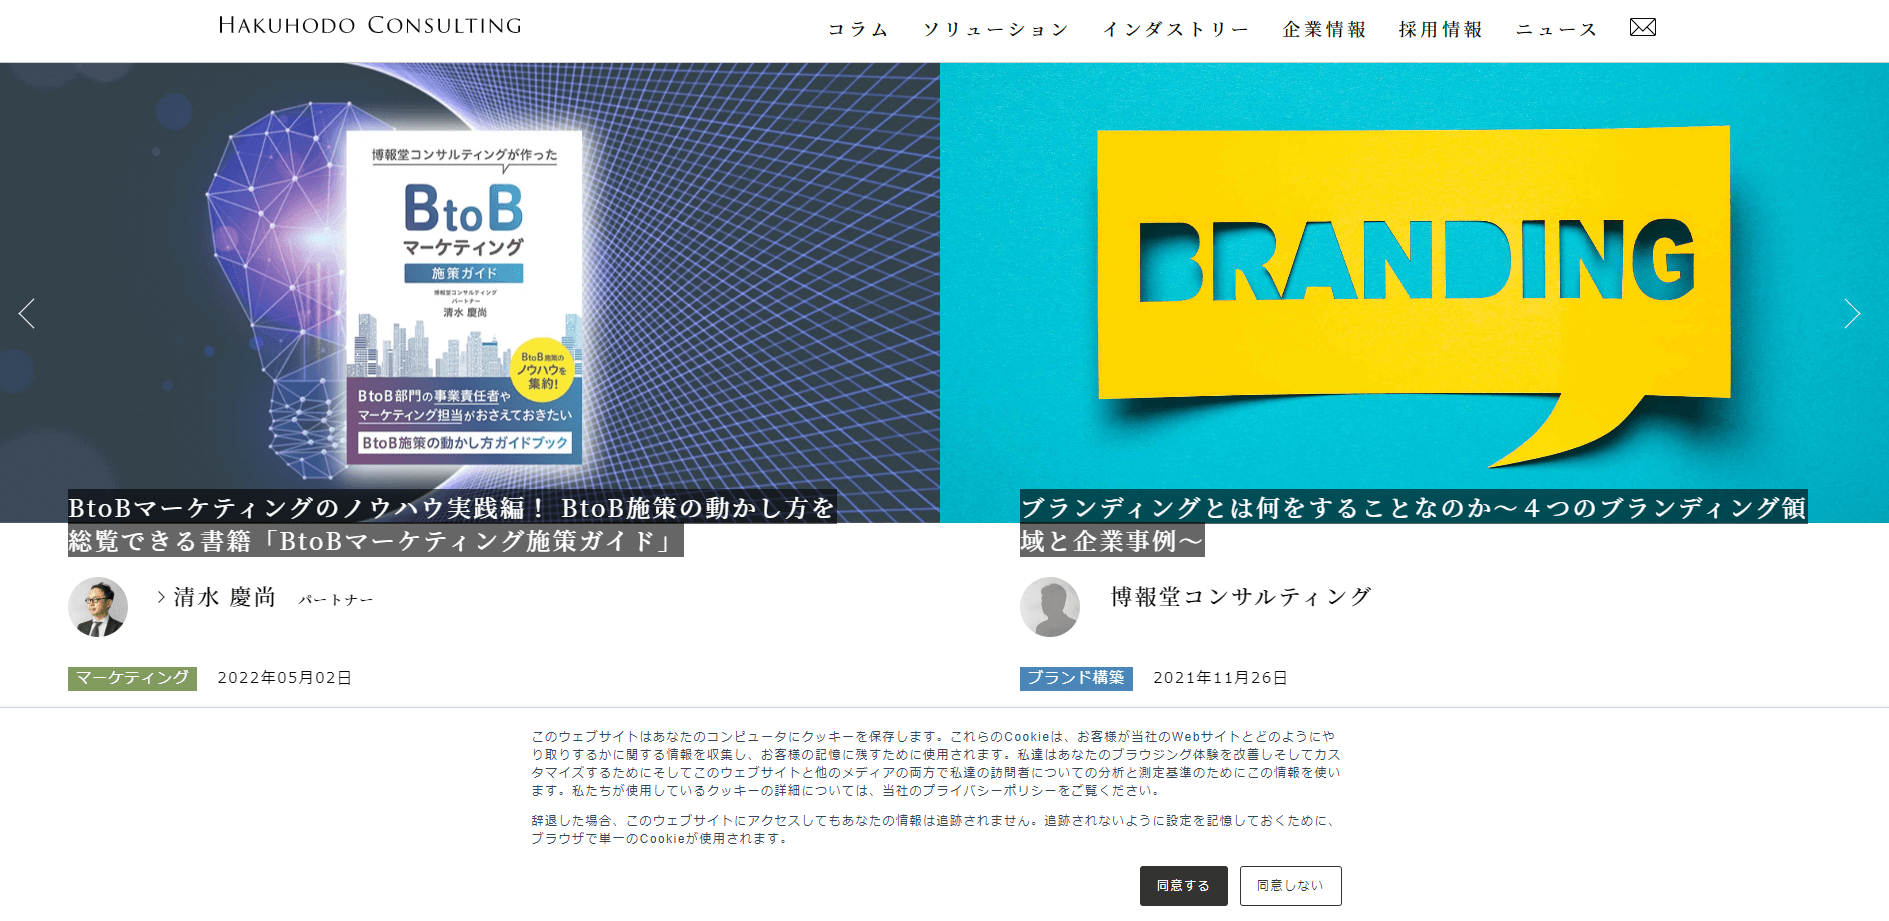 博報堂コンサルティング公式サイトキャプチャ画像